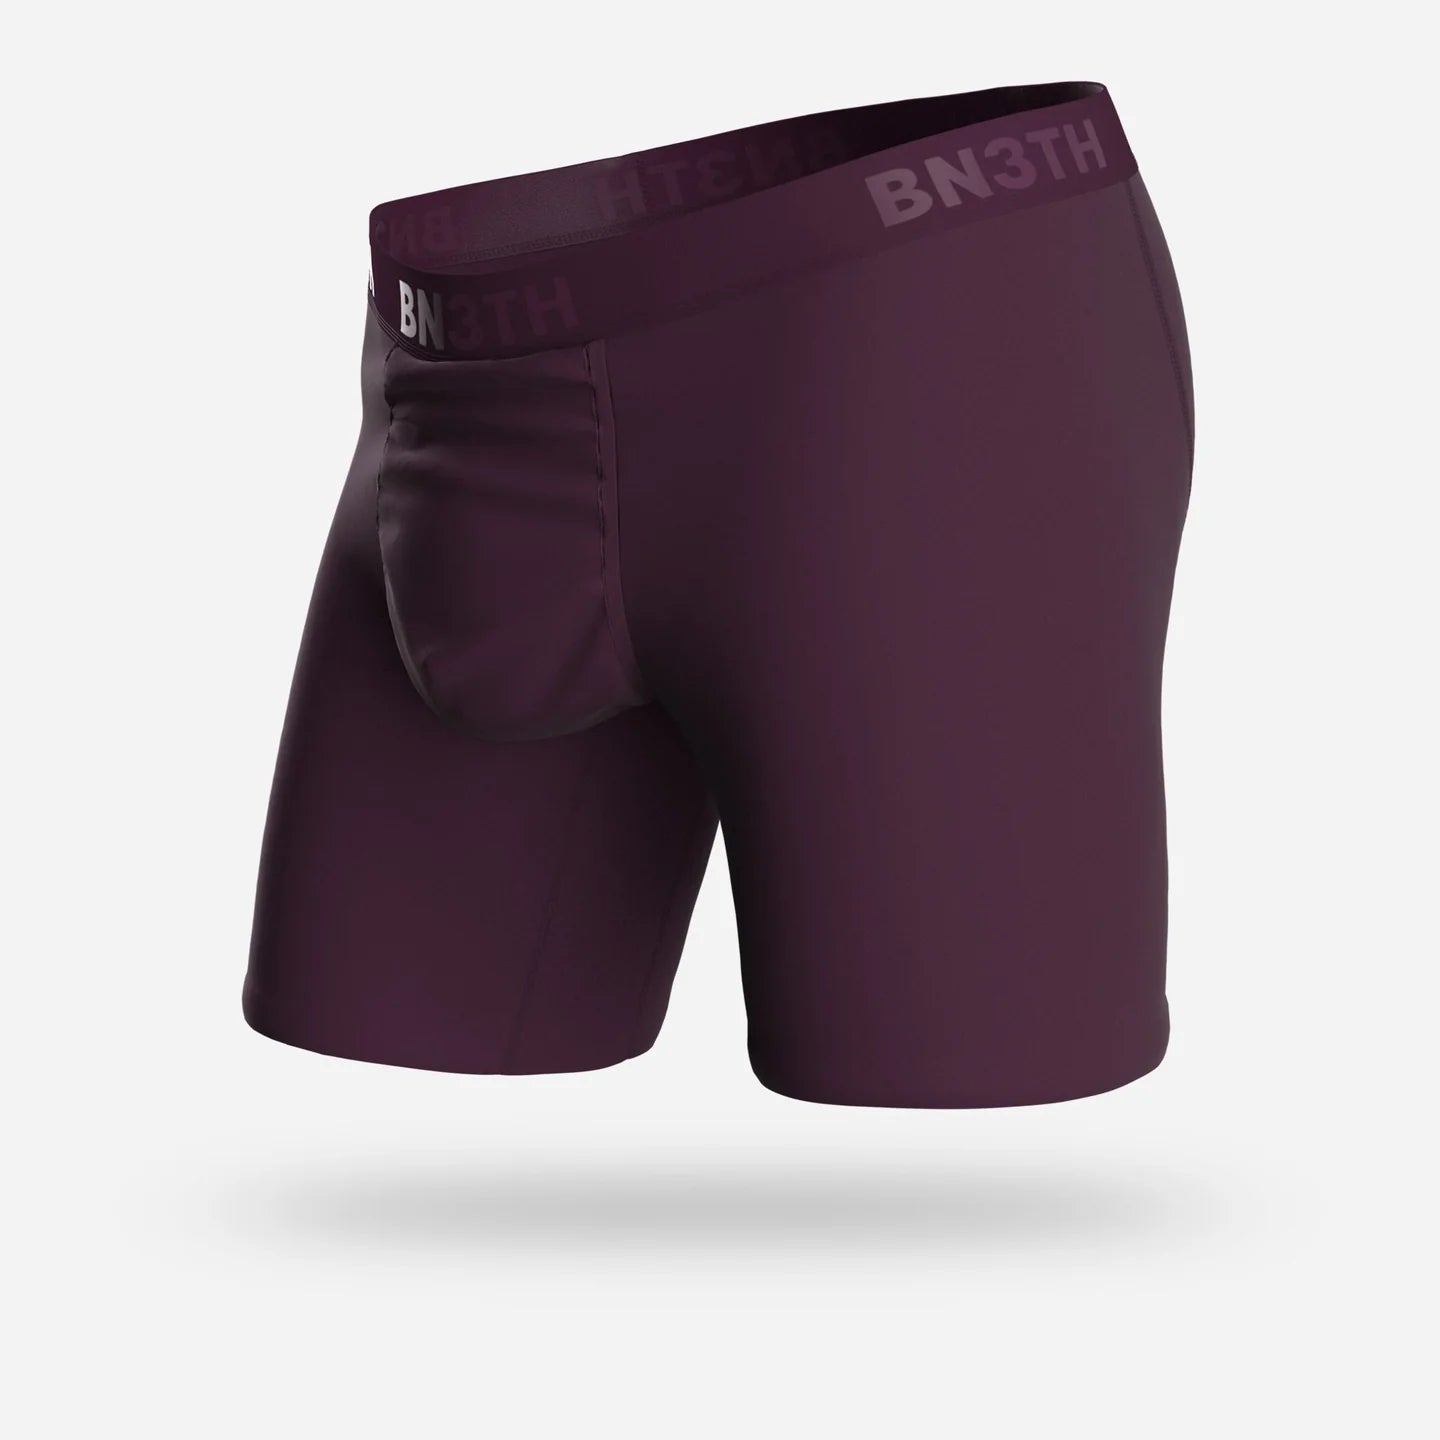 BN3TH Underwear Classic Boxer Brief 2 Pack - Navy / Black